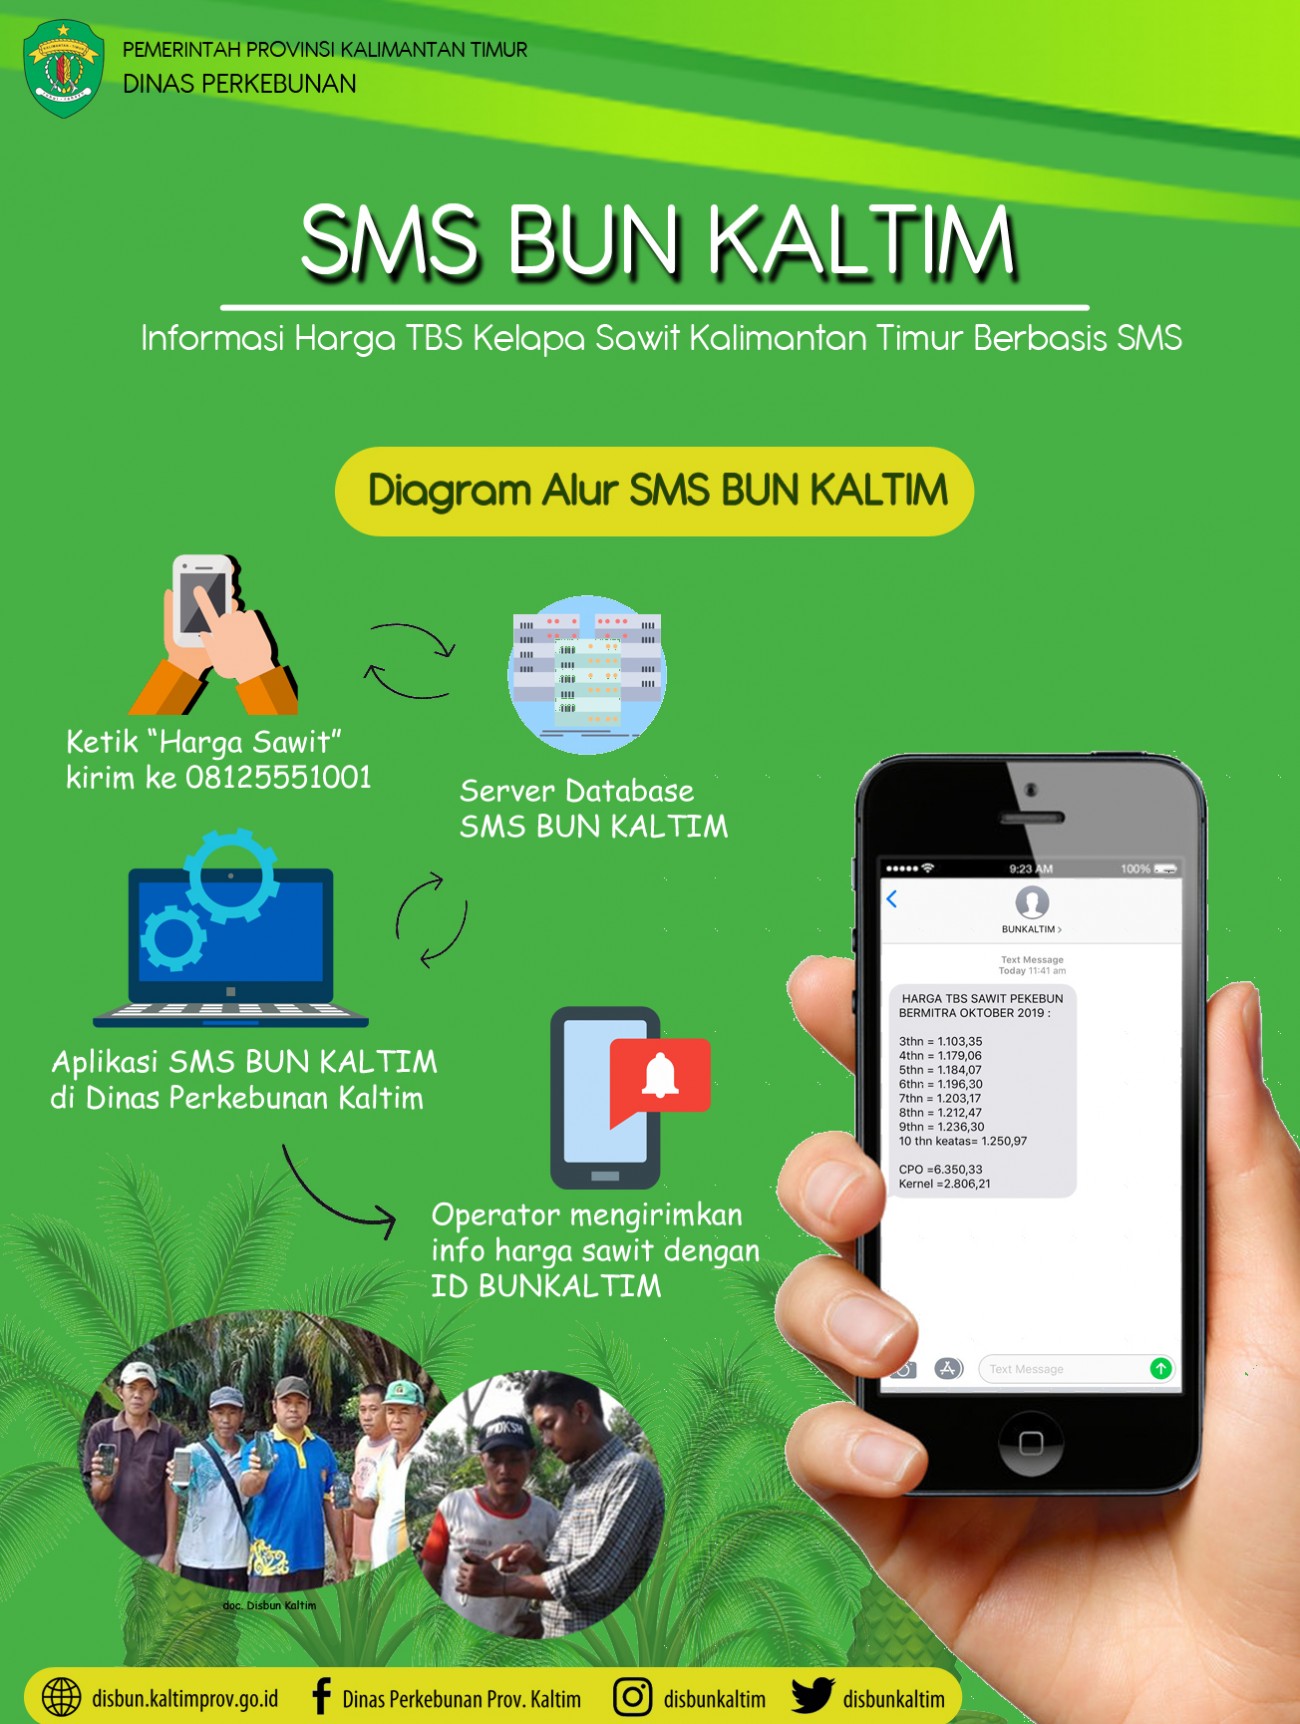 SMS Bunkaltim : Informasi Harga TBS Kelapa Sawit Kalimantan Timur Berbasis SMS